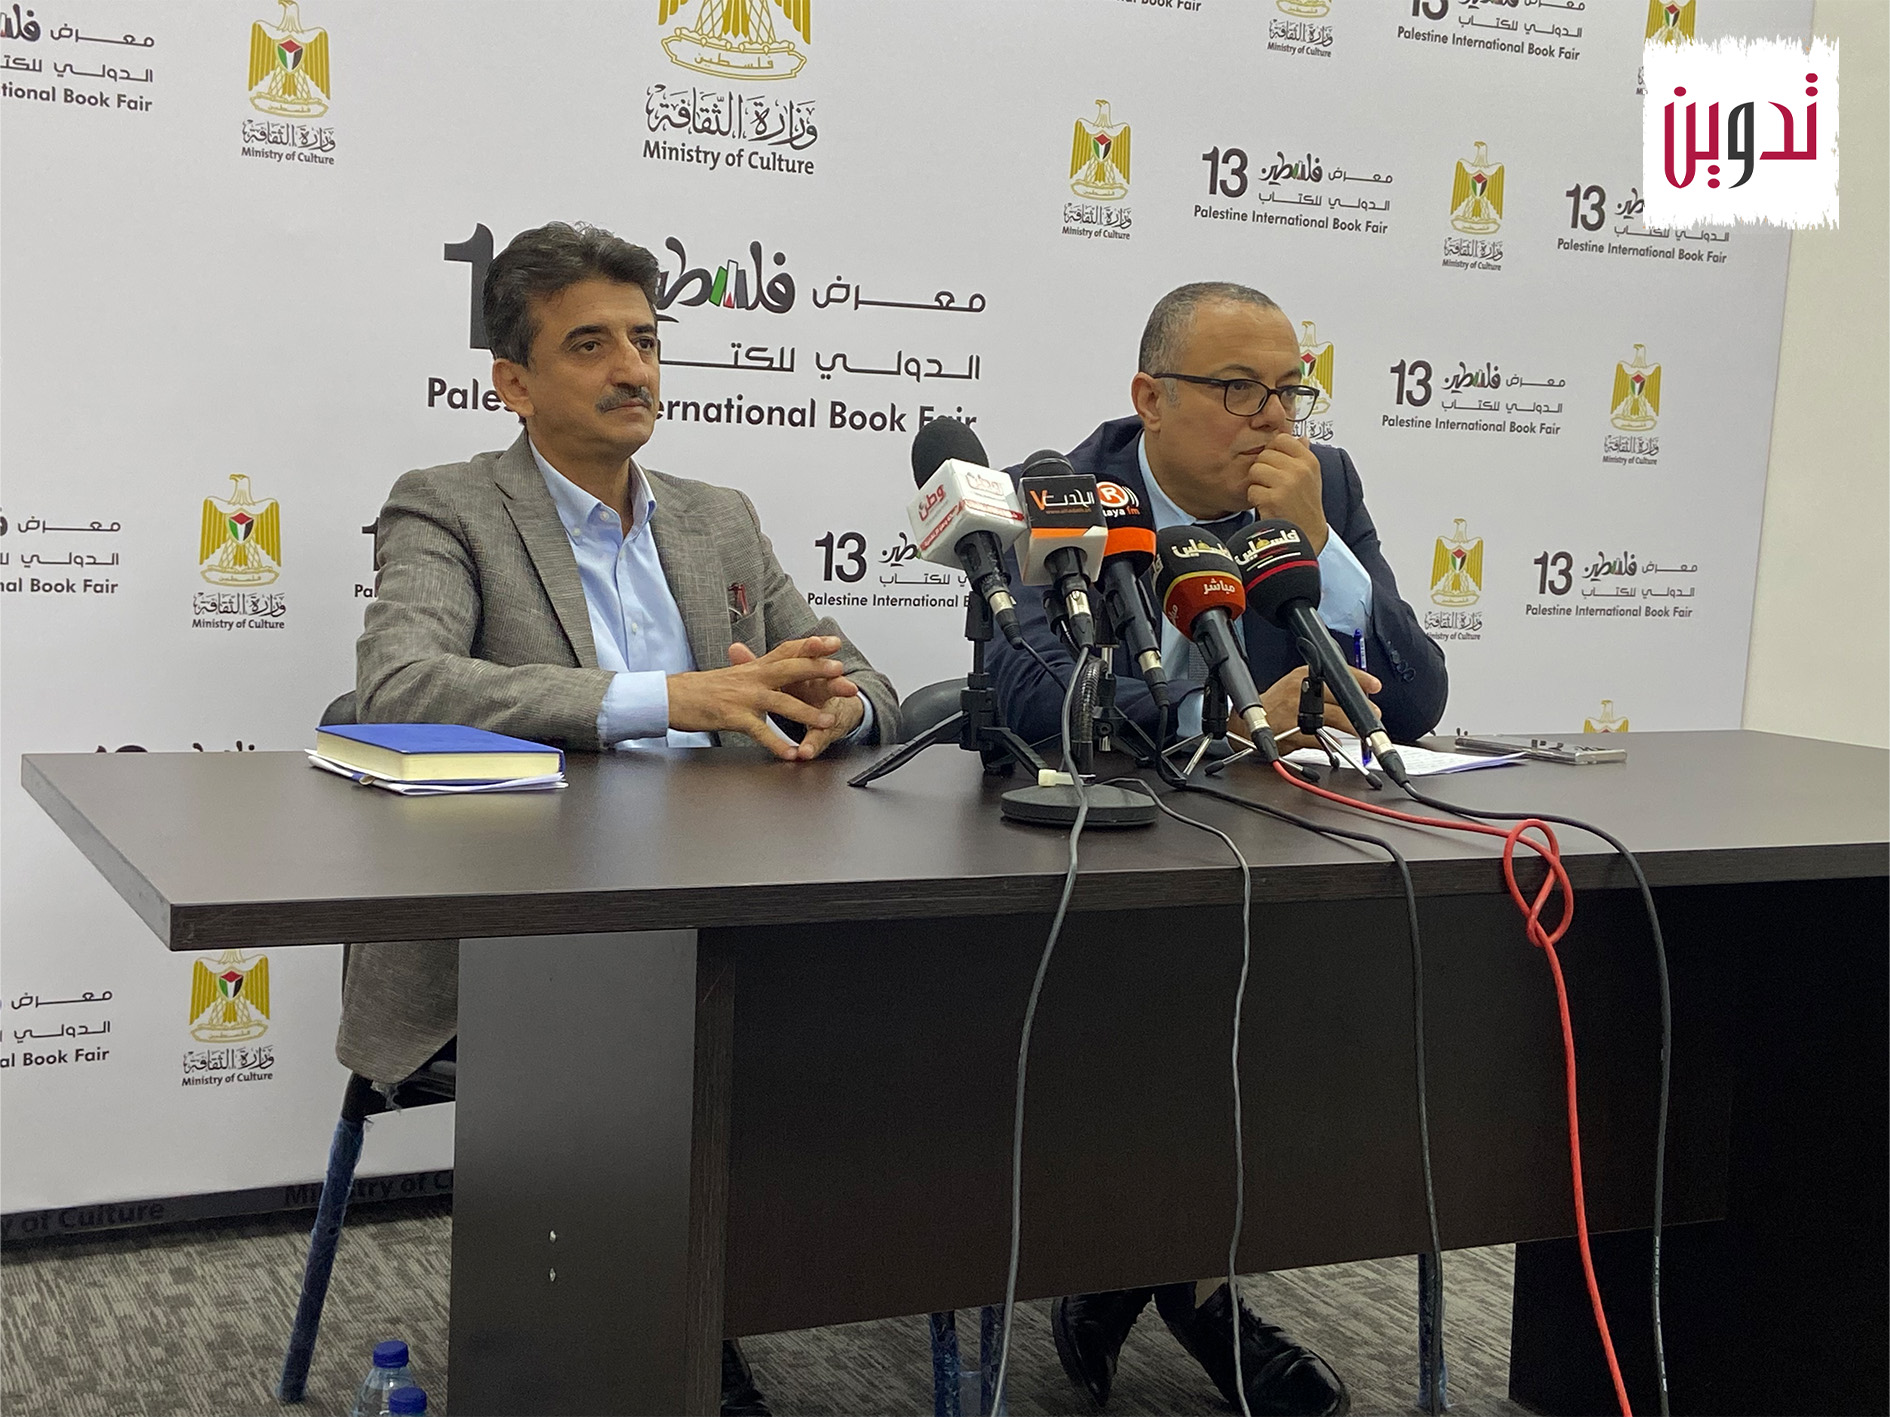 وزارة الثقافة تعلن عن انطلاق فعاليات معرض فلسطين الدولي للكتاب 2023

